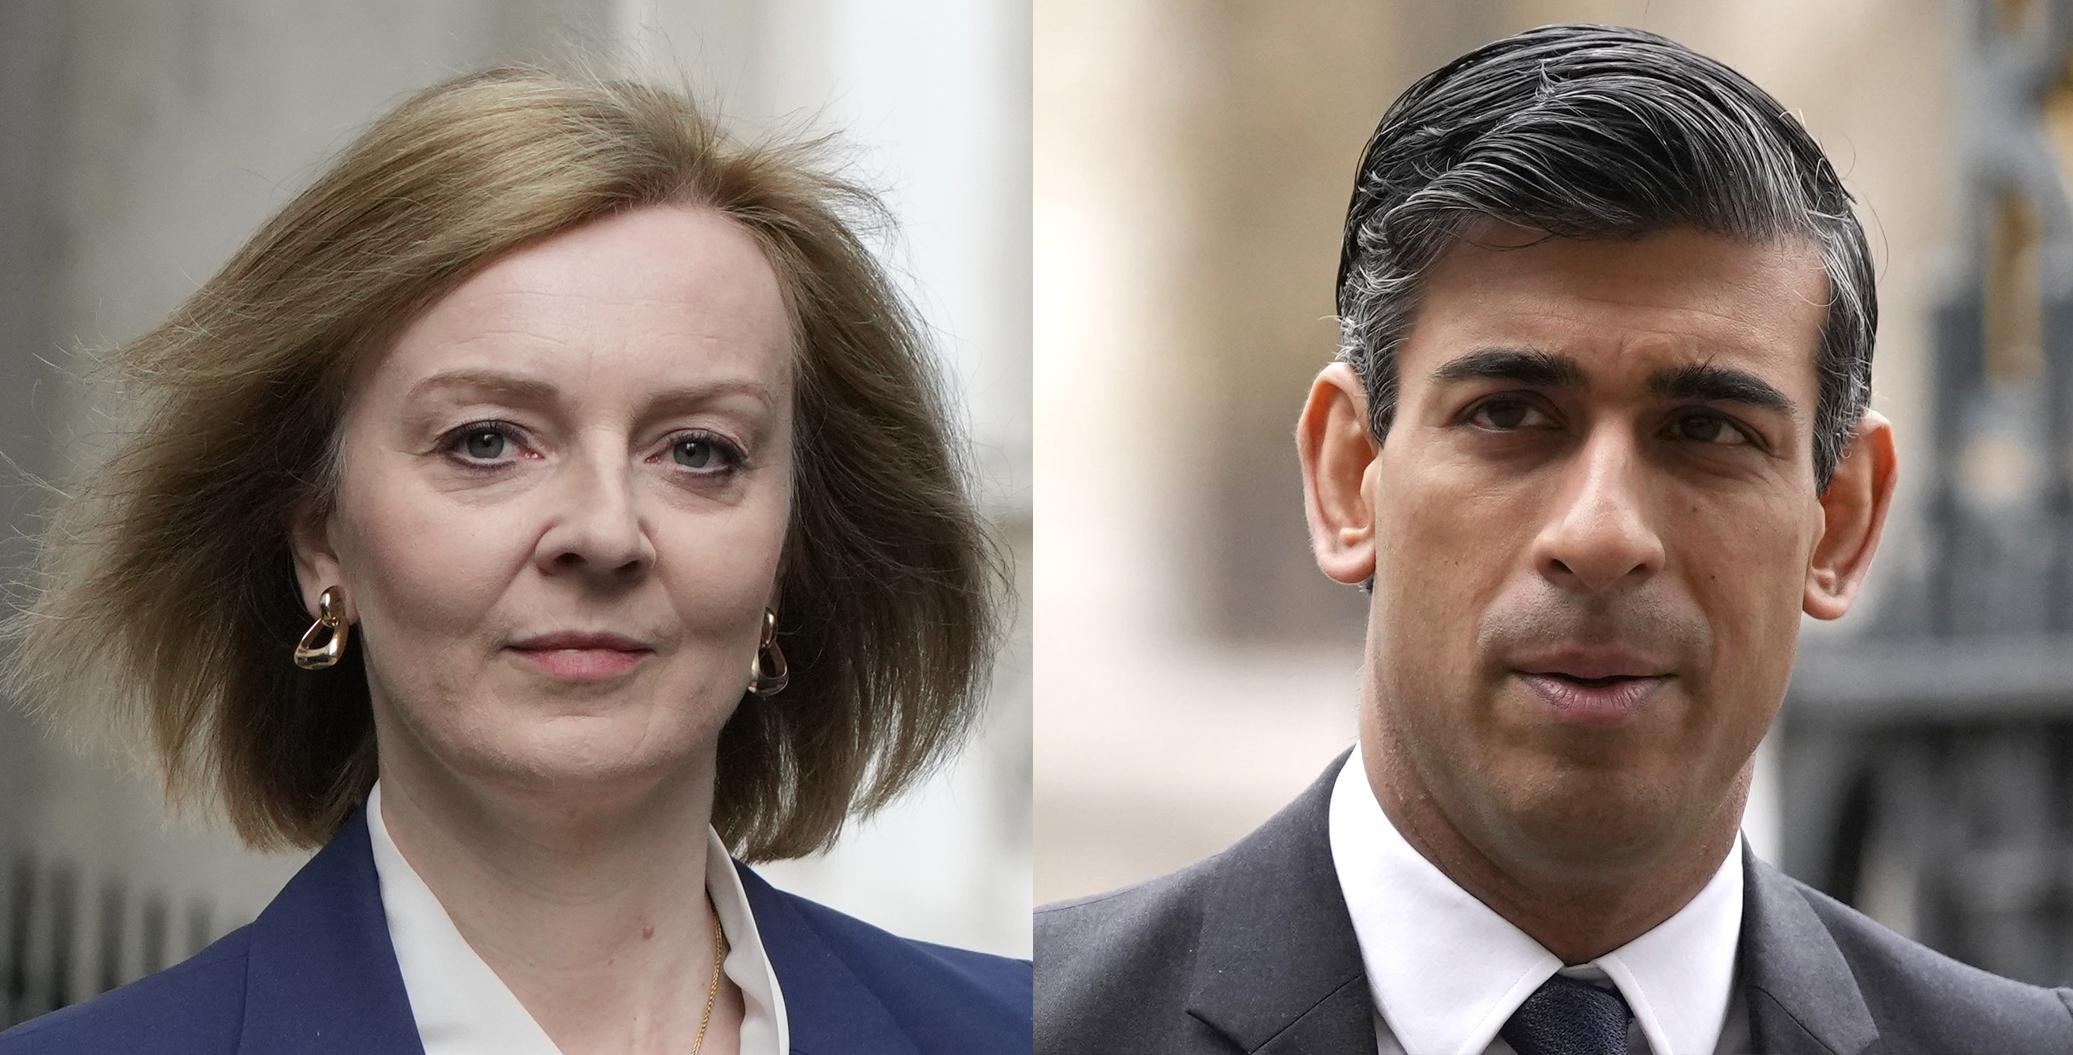 2 UK leadership contenders spar over tax in TV debate